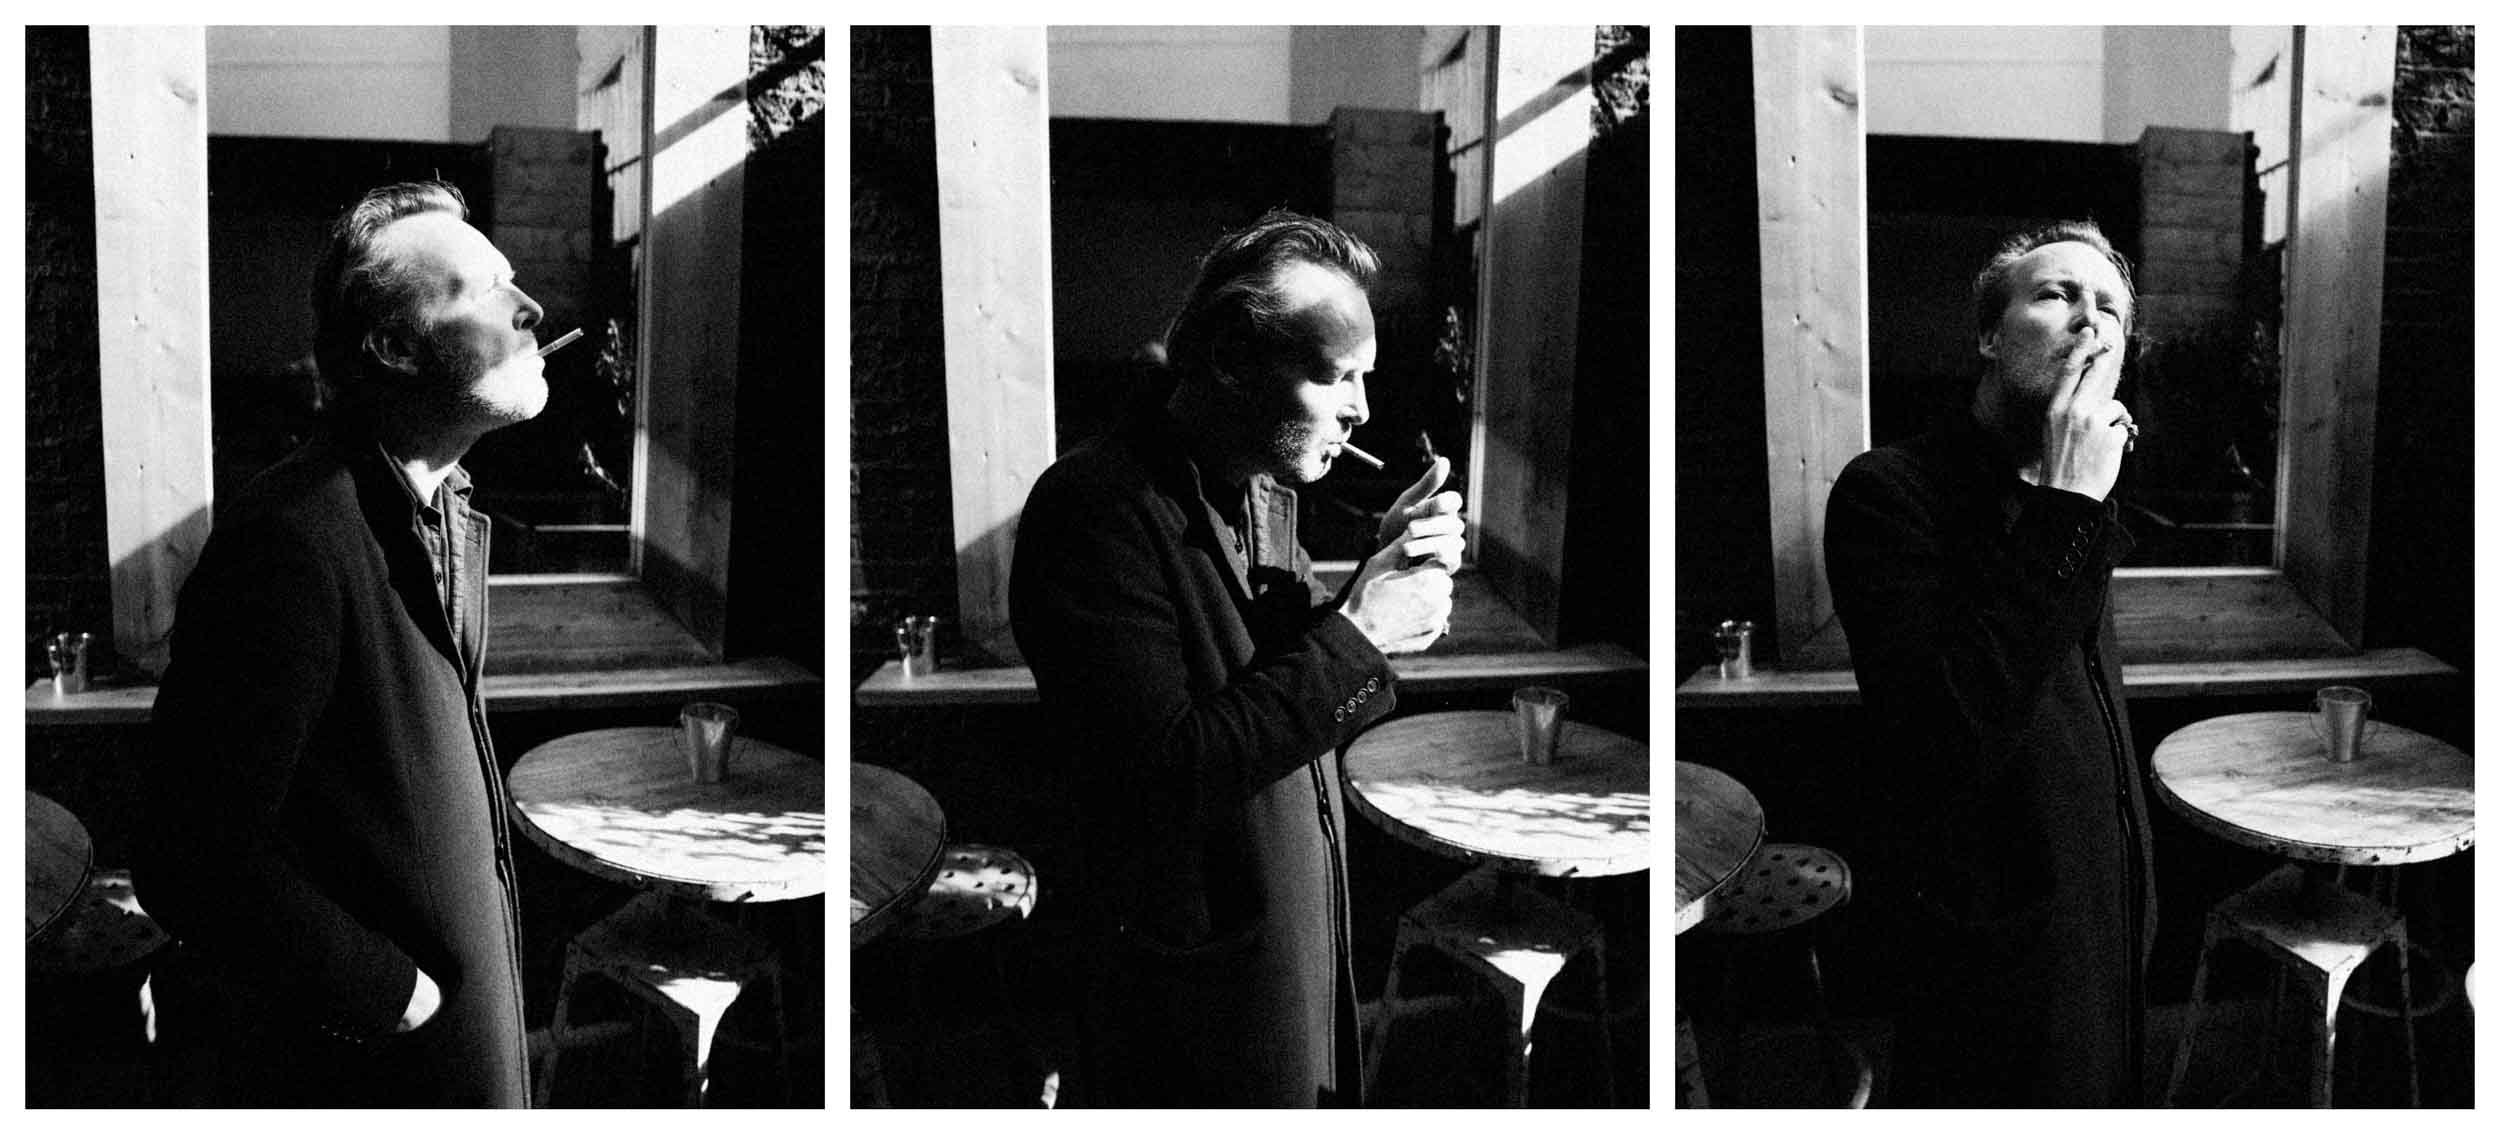 Jack Eames Portrait Photographer London Peter Jobson